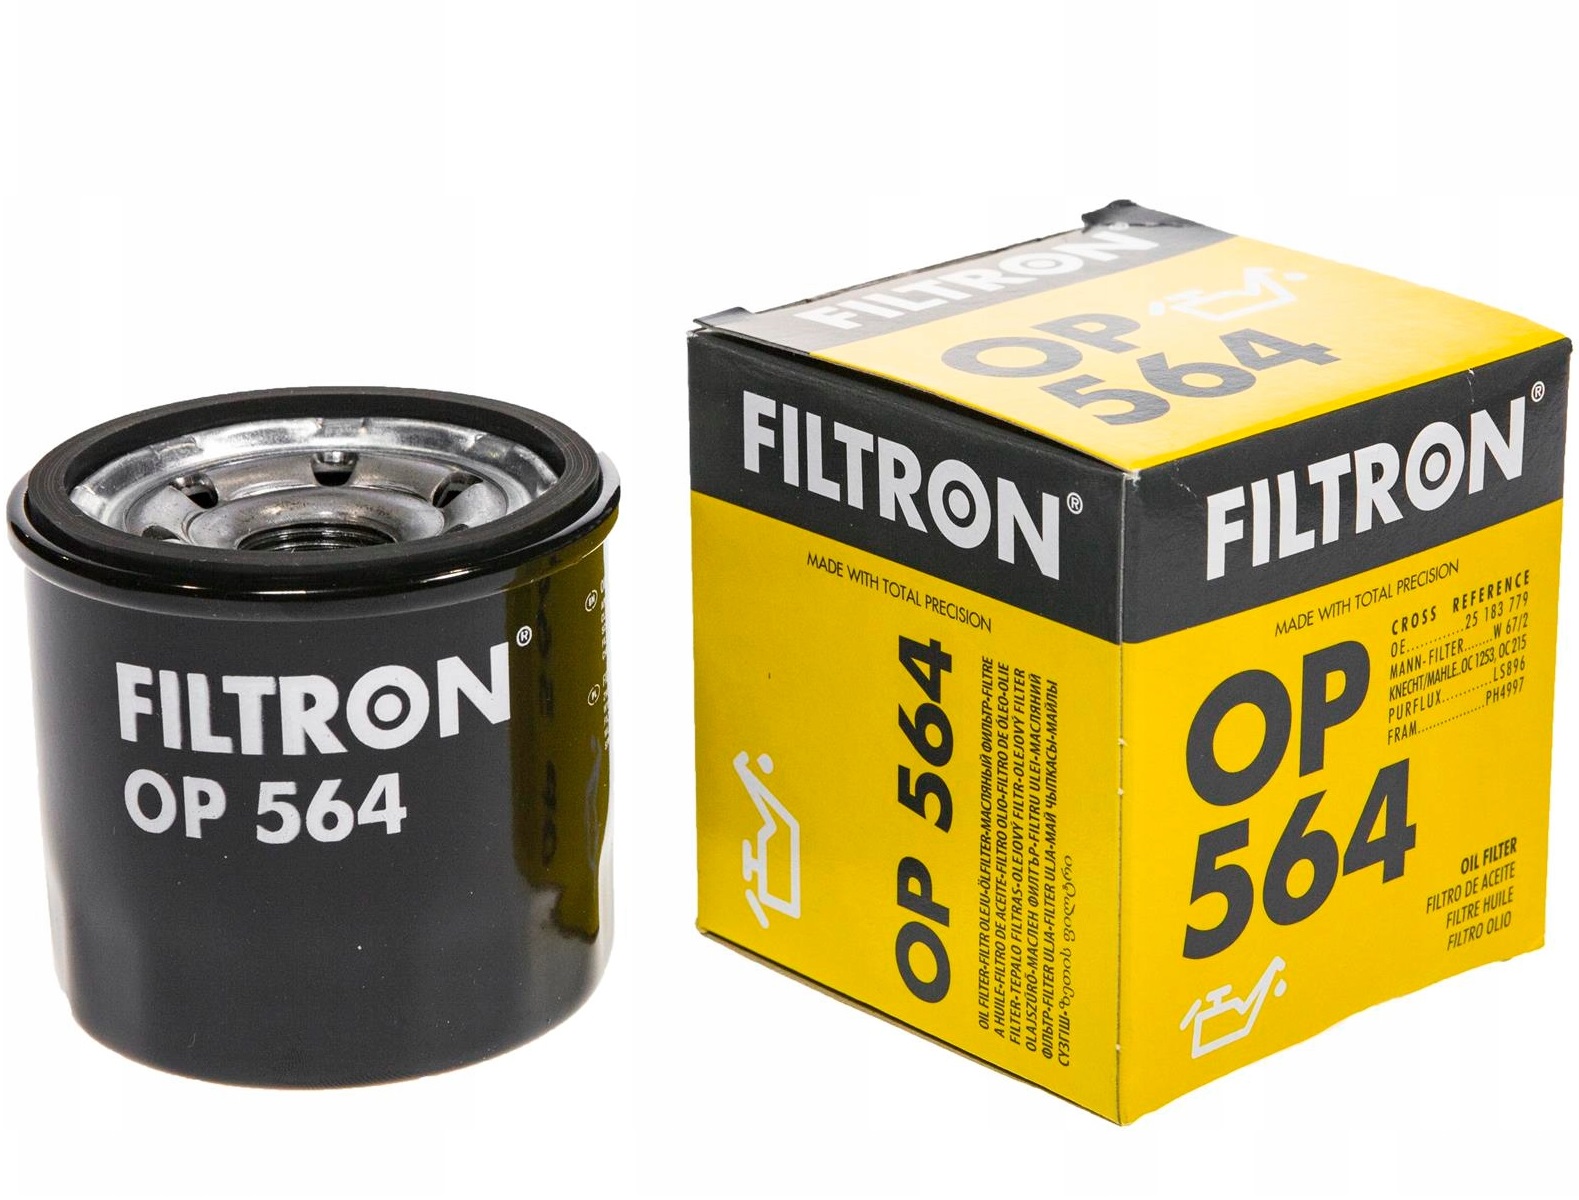 FILTRON, Фильтр масляный,564OP/FO-002, Германия